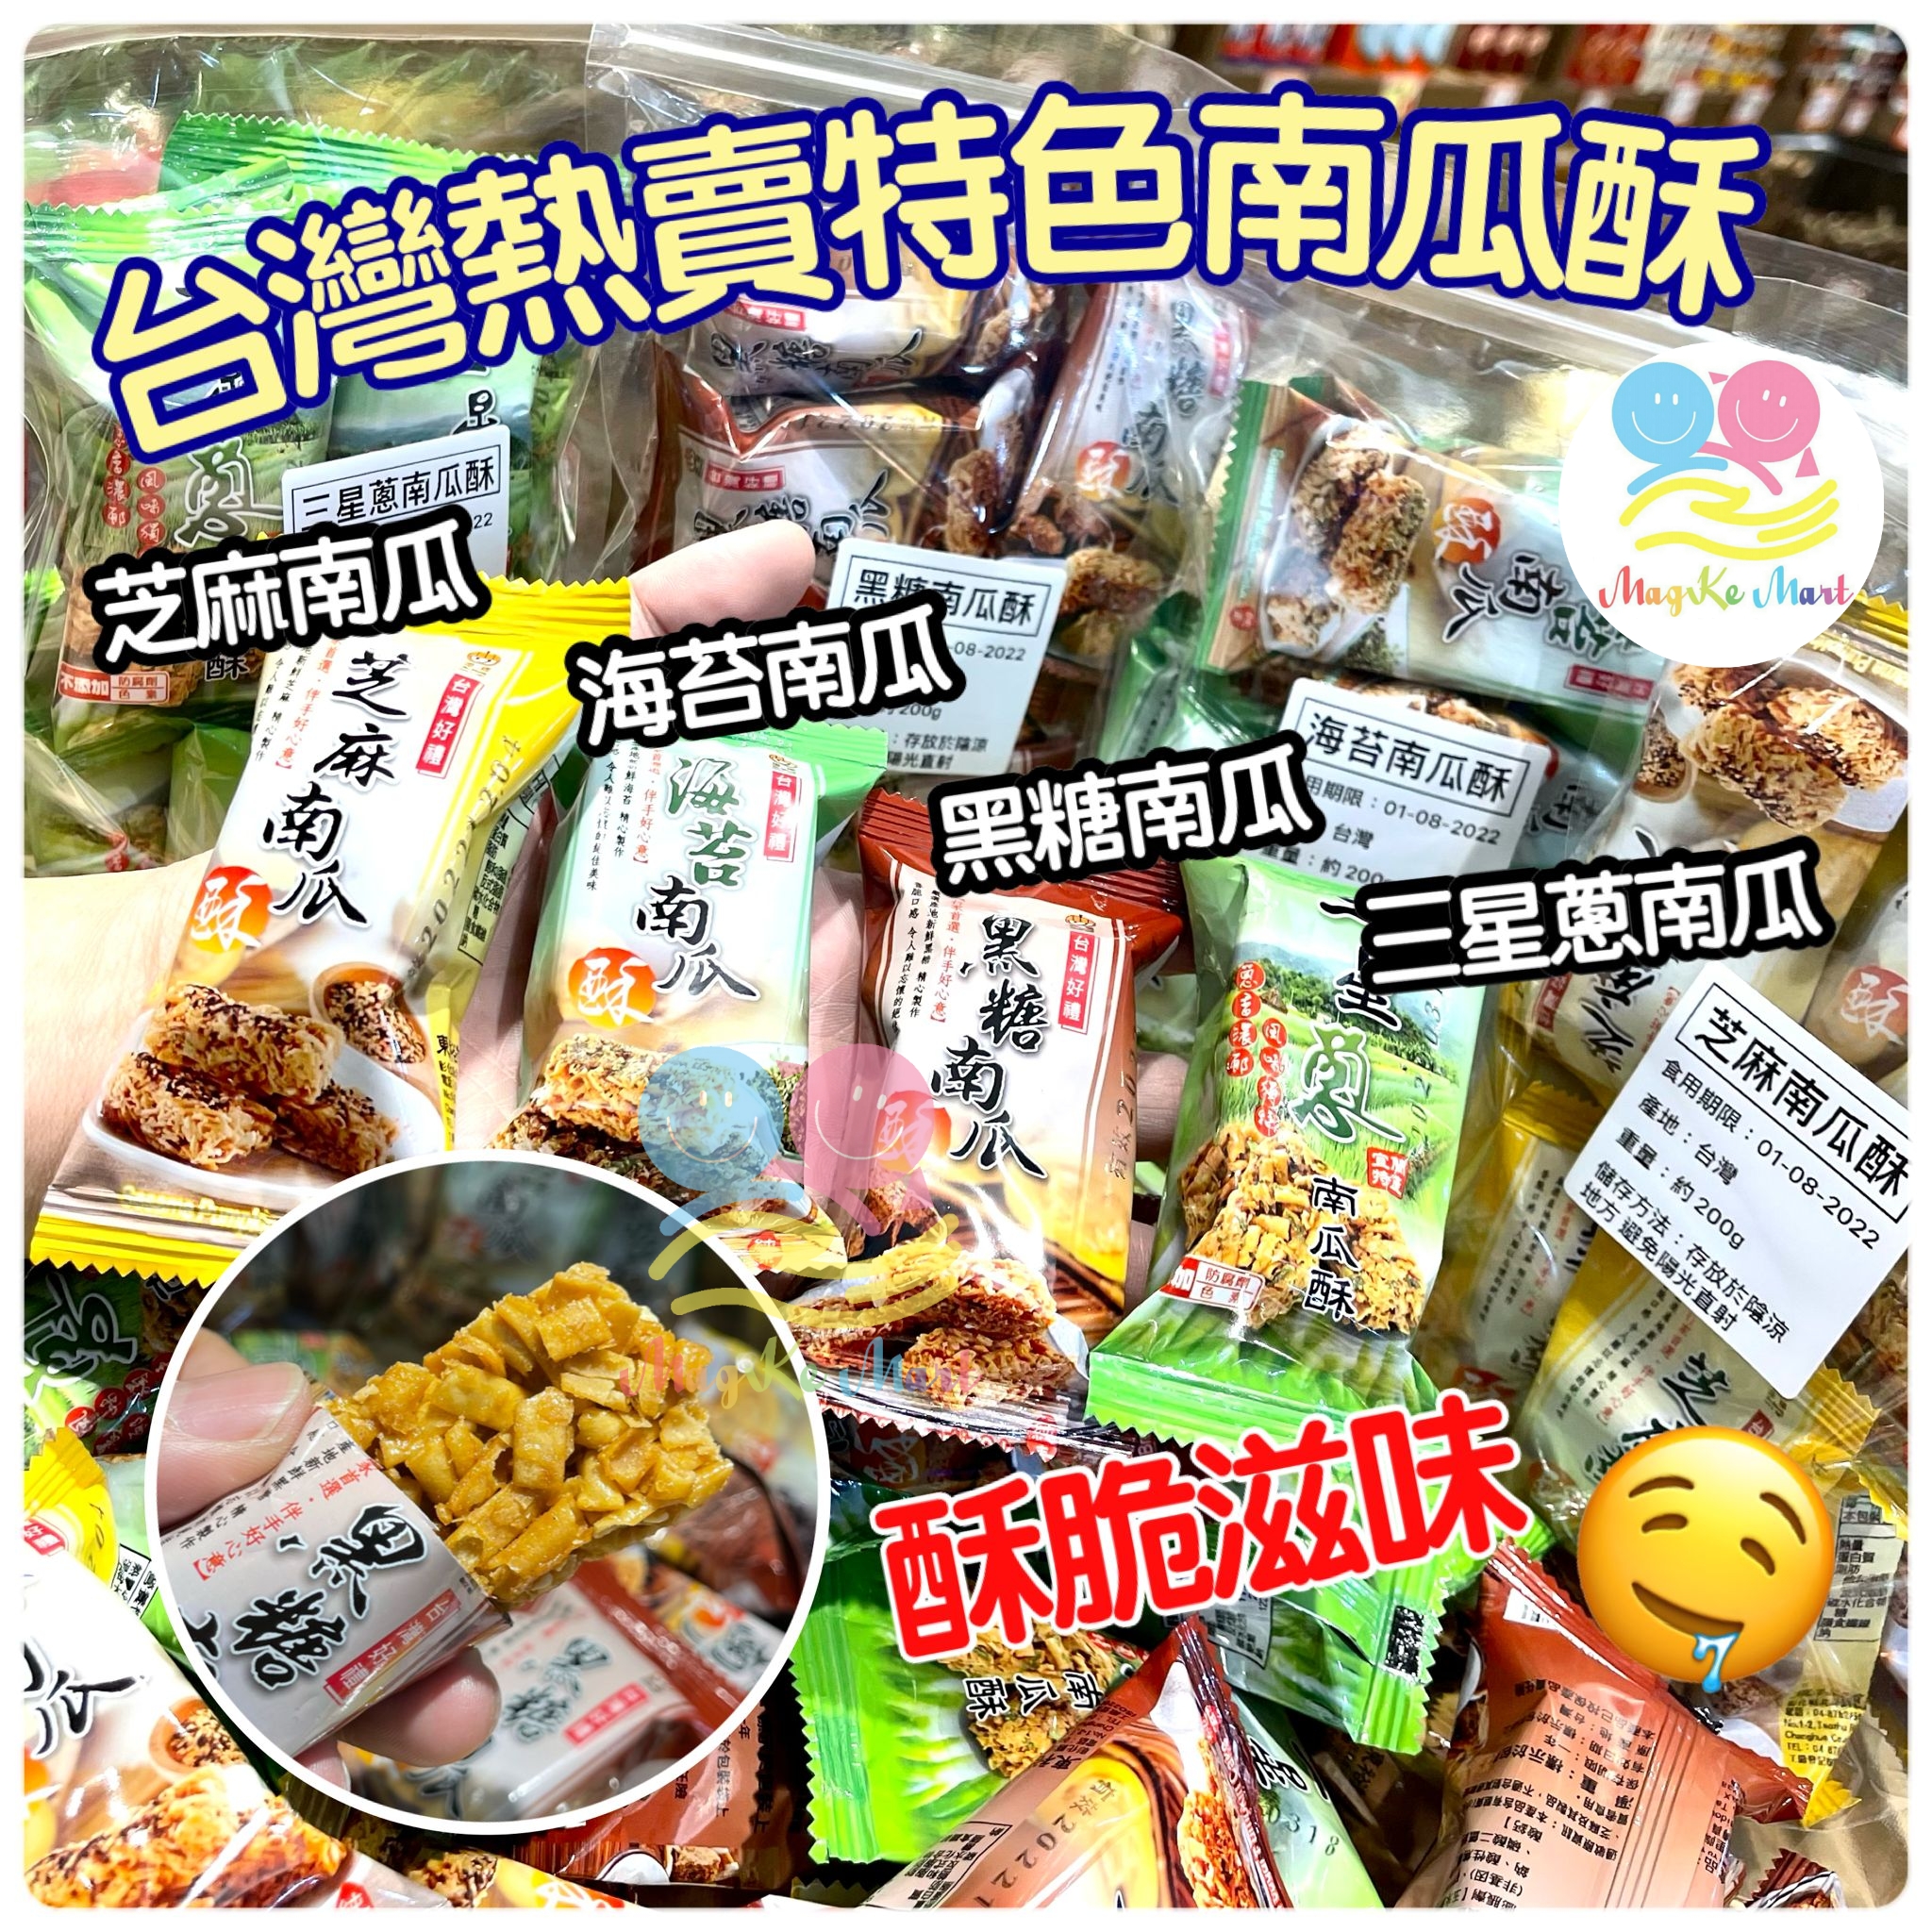 台灣熱賣經典南瓜酥 200g (C) 芝麻南瓜酥